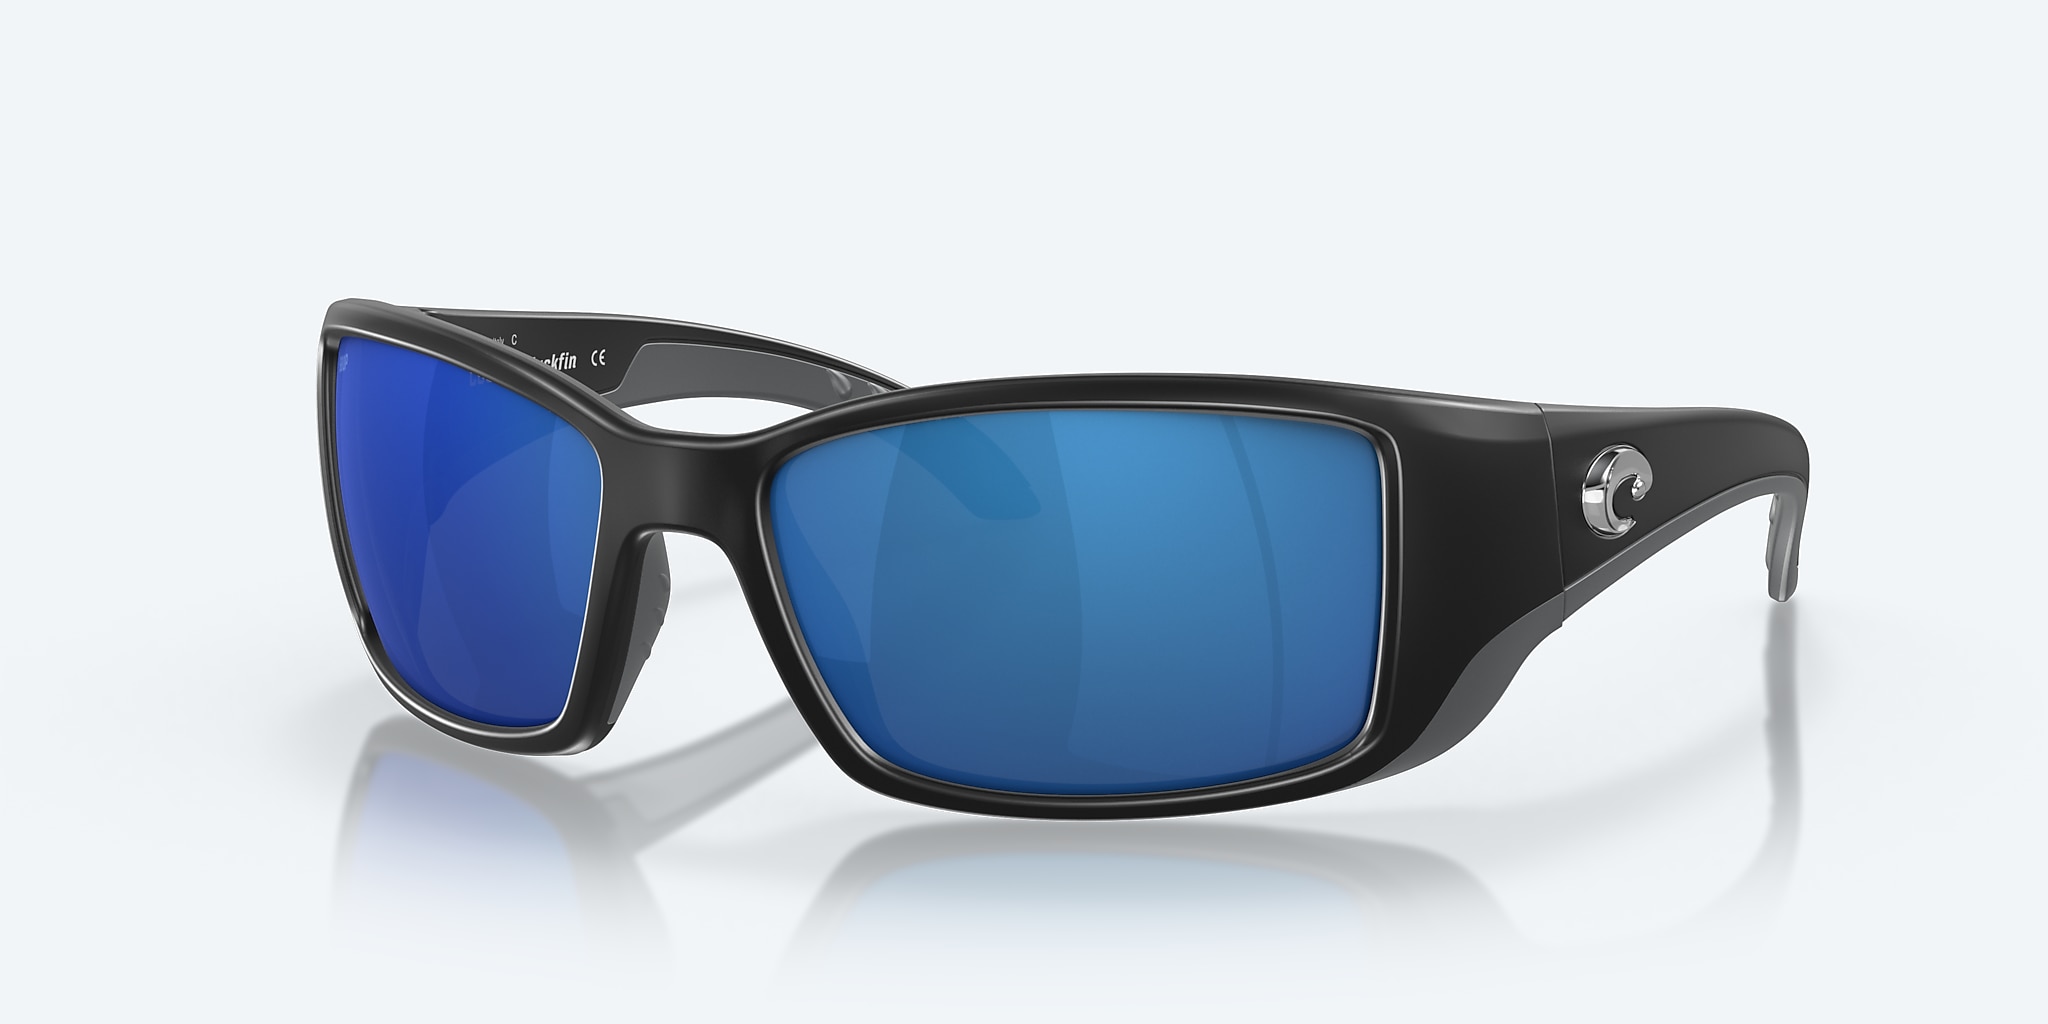 Blackfin Polarized Sunglasses in Blue Mirror